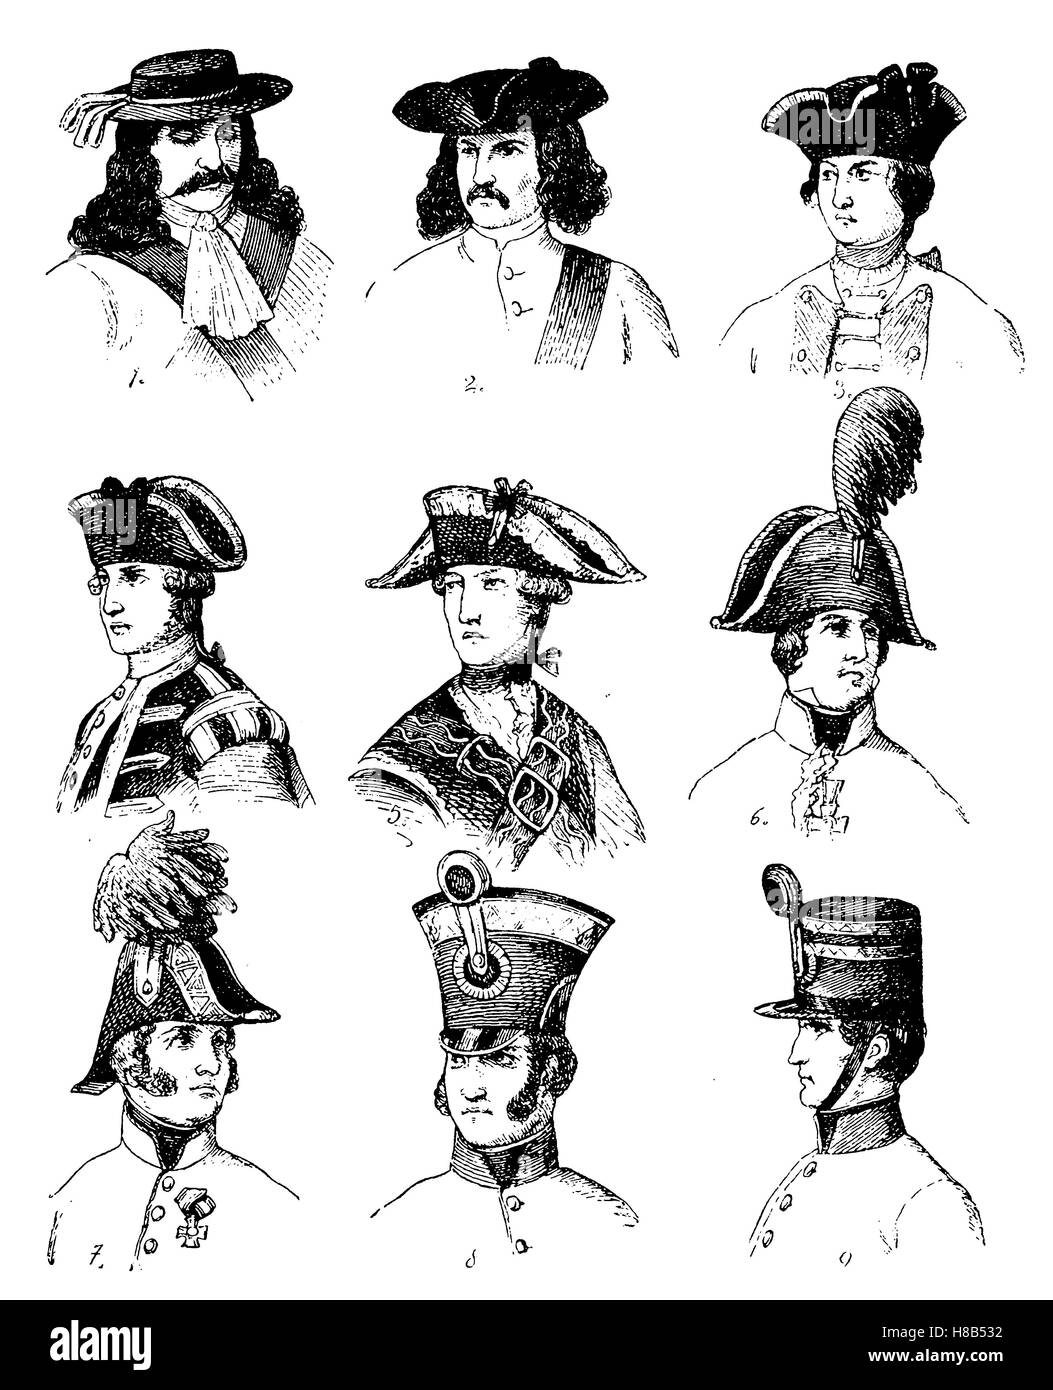 Militärische Kopfbedeckungen von 1670-1840, Geschichte der Mode,  Kostüm-Geschichte Stockfotografie - Alamy